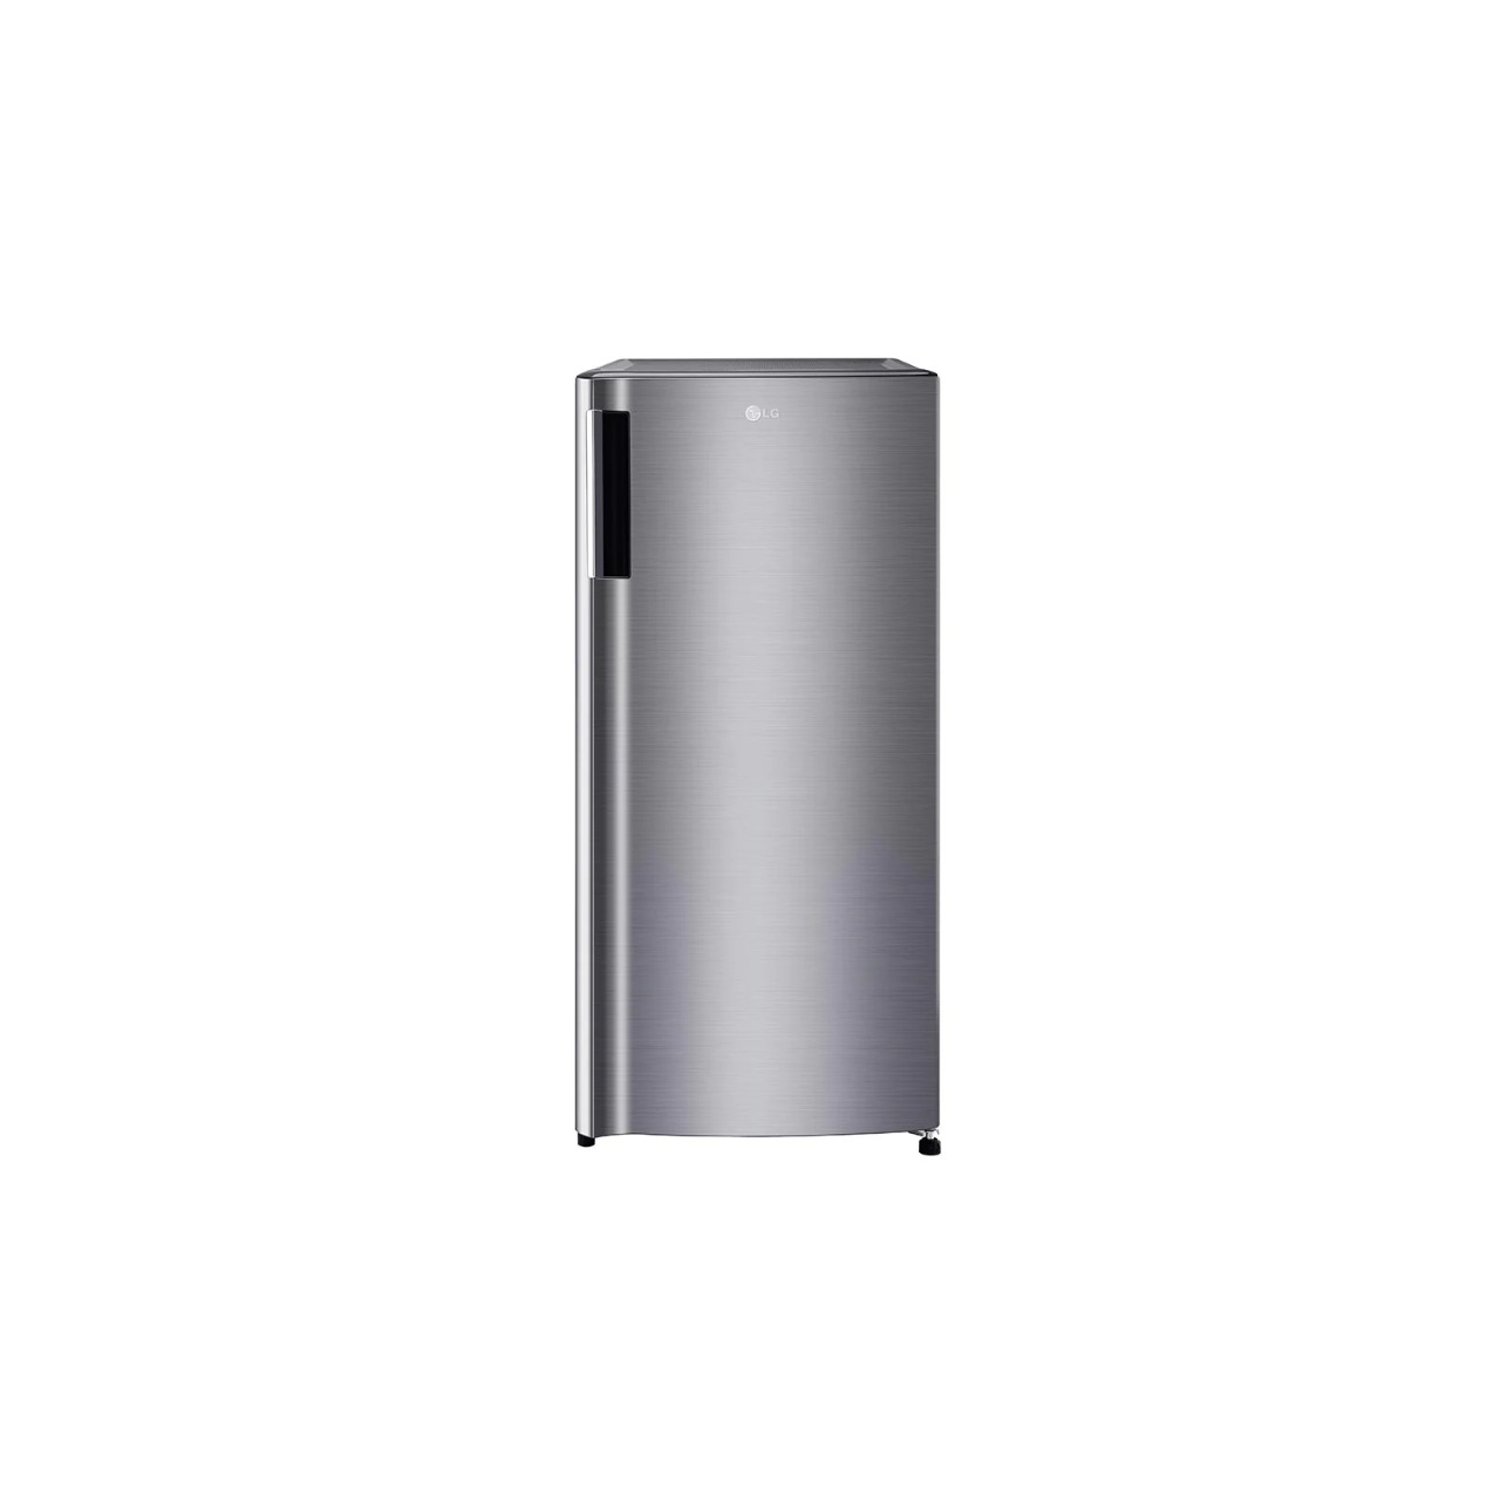  LG 199-Liter Refrigerator Single Door GNY331